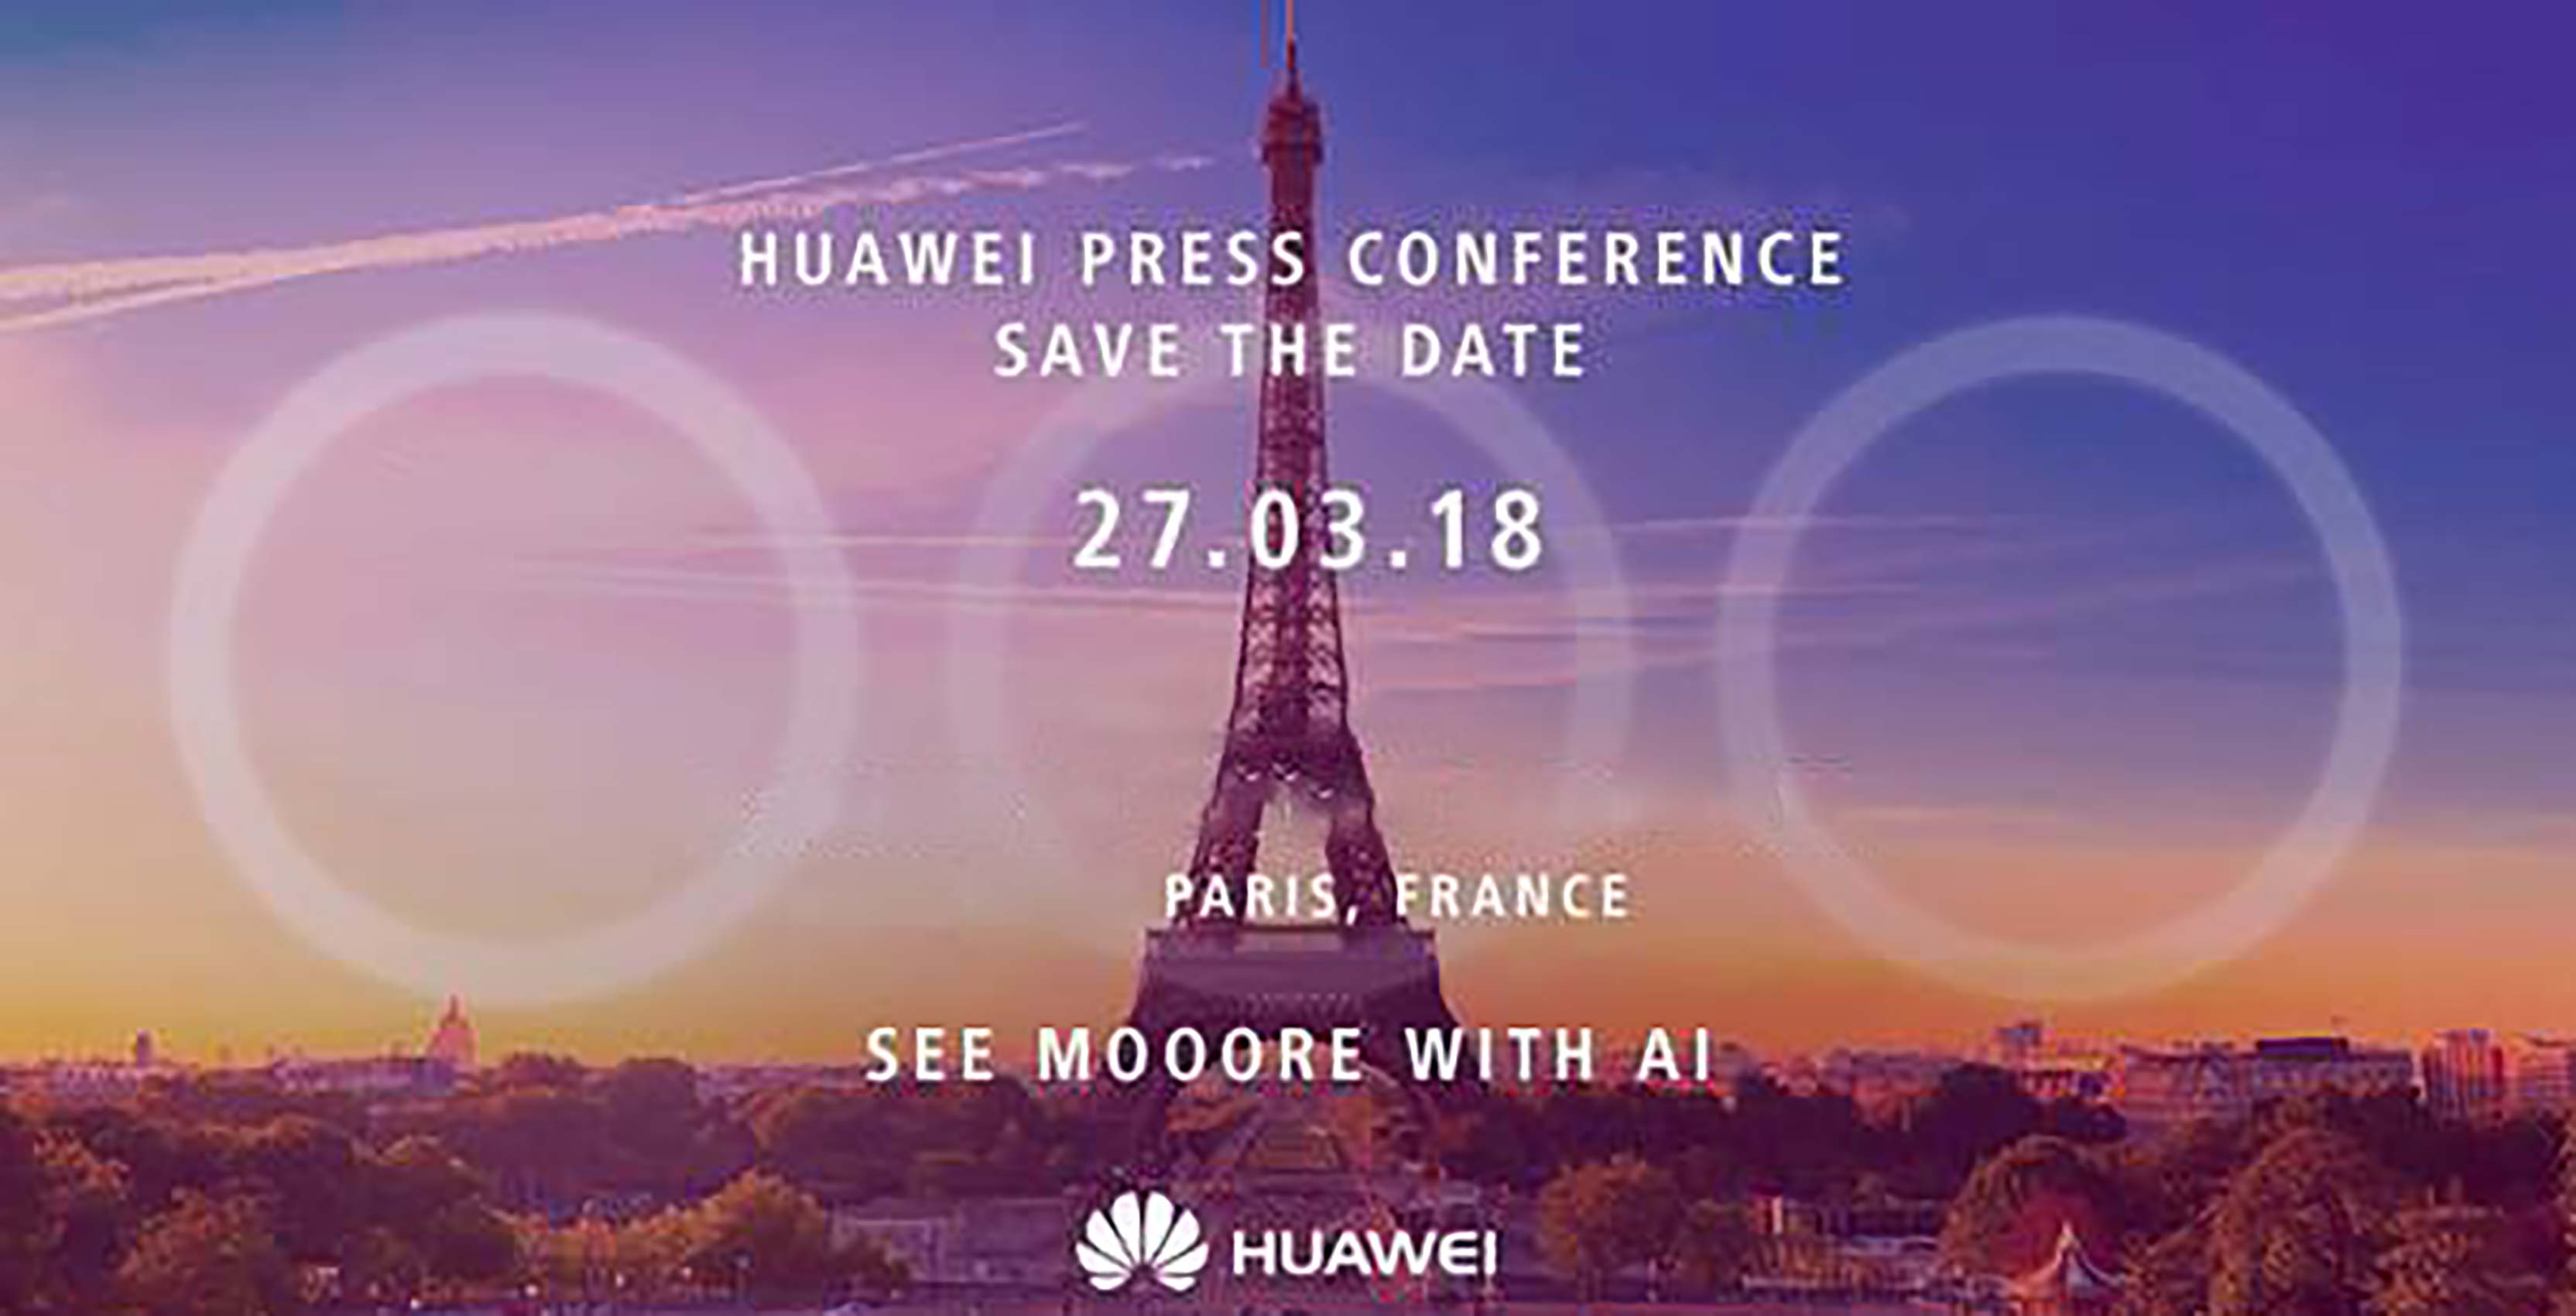 Huawei P20 invite